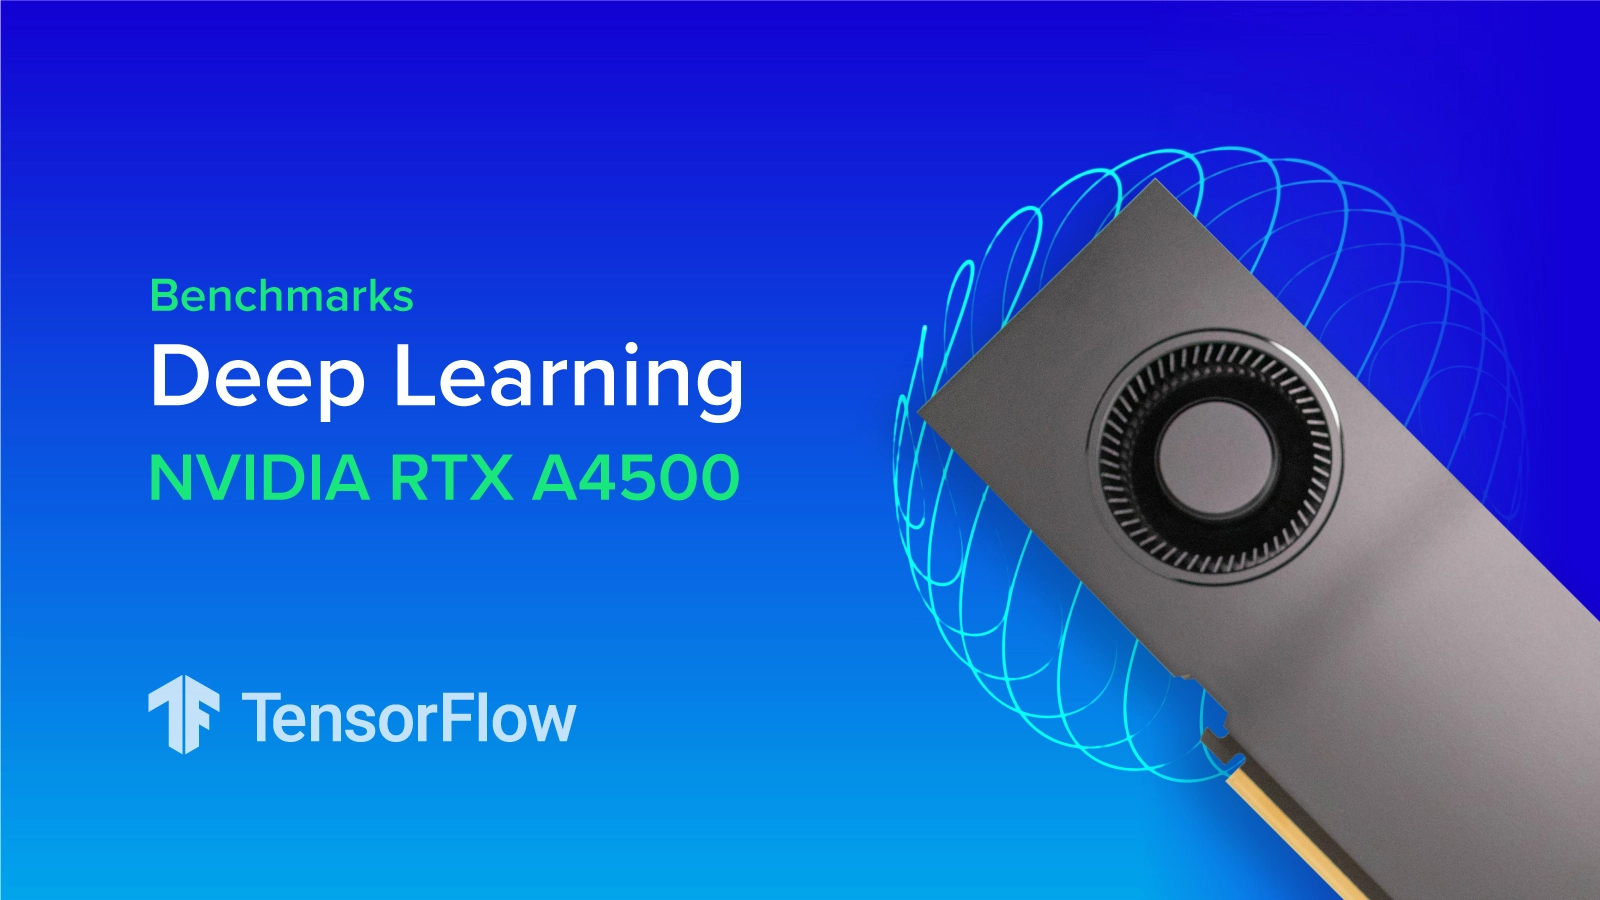 EXX-Blog-NVIDIA-RTX-A4500-Deep-Learning-Benchmark.jpg